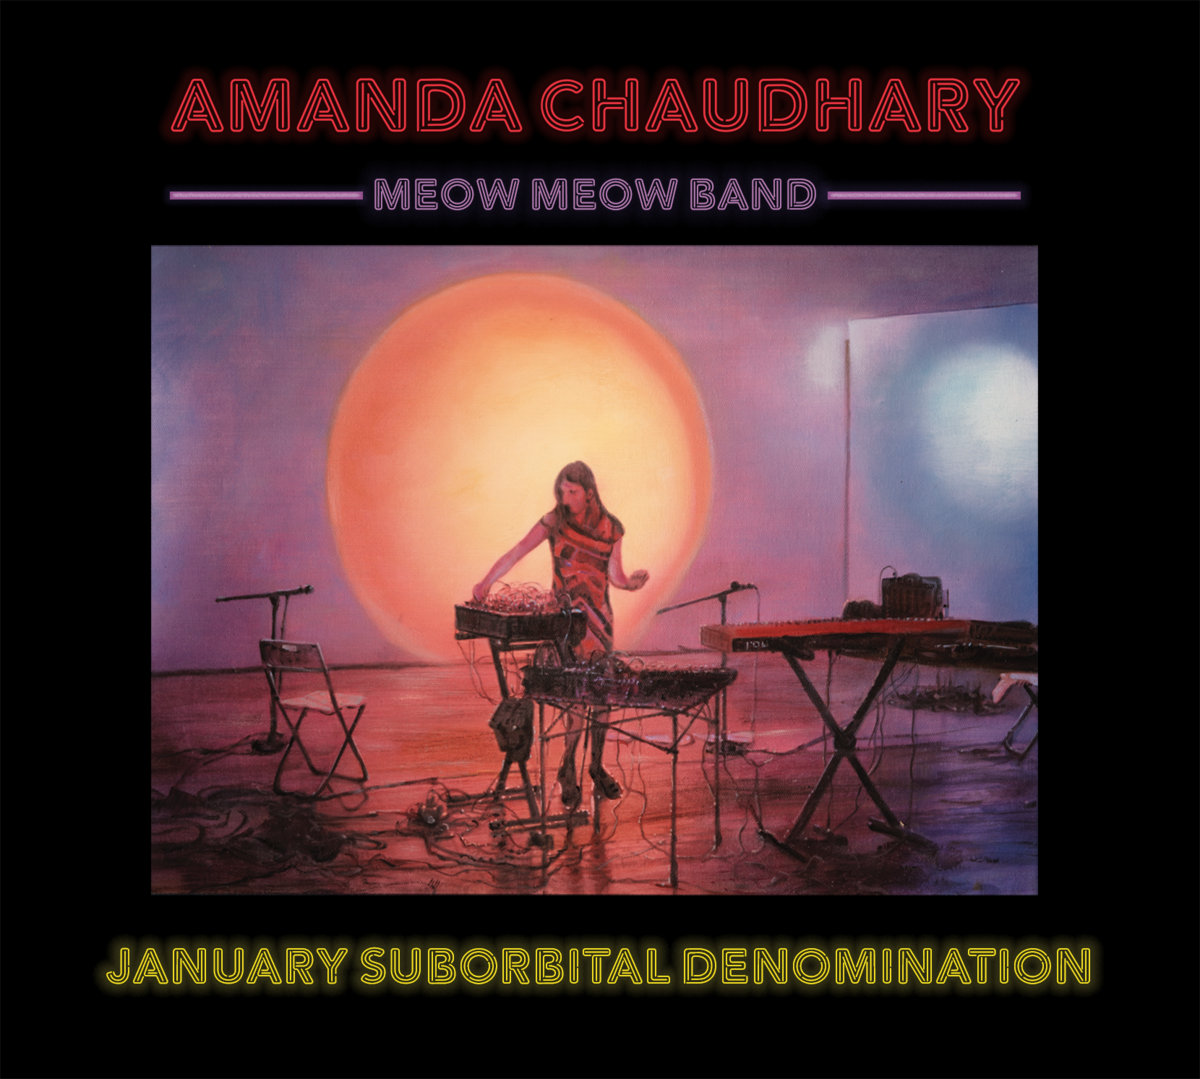 Amanda Chaudhary — January Suborbital Denomination